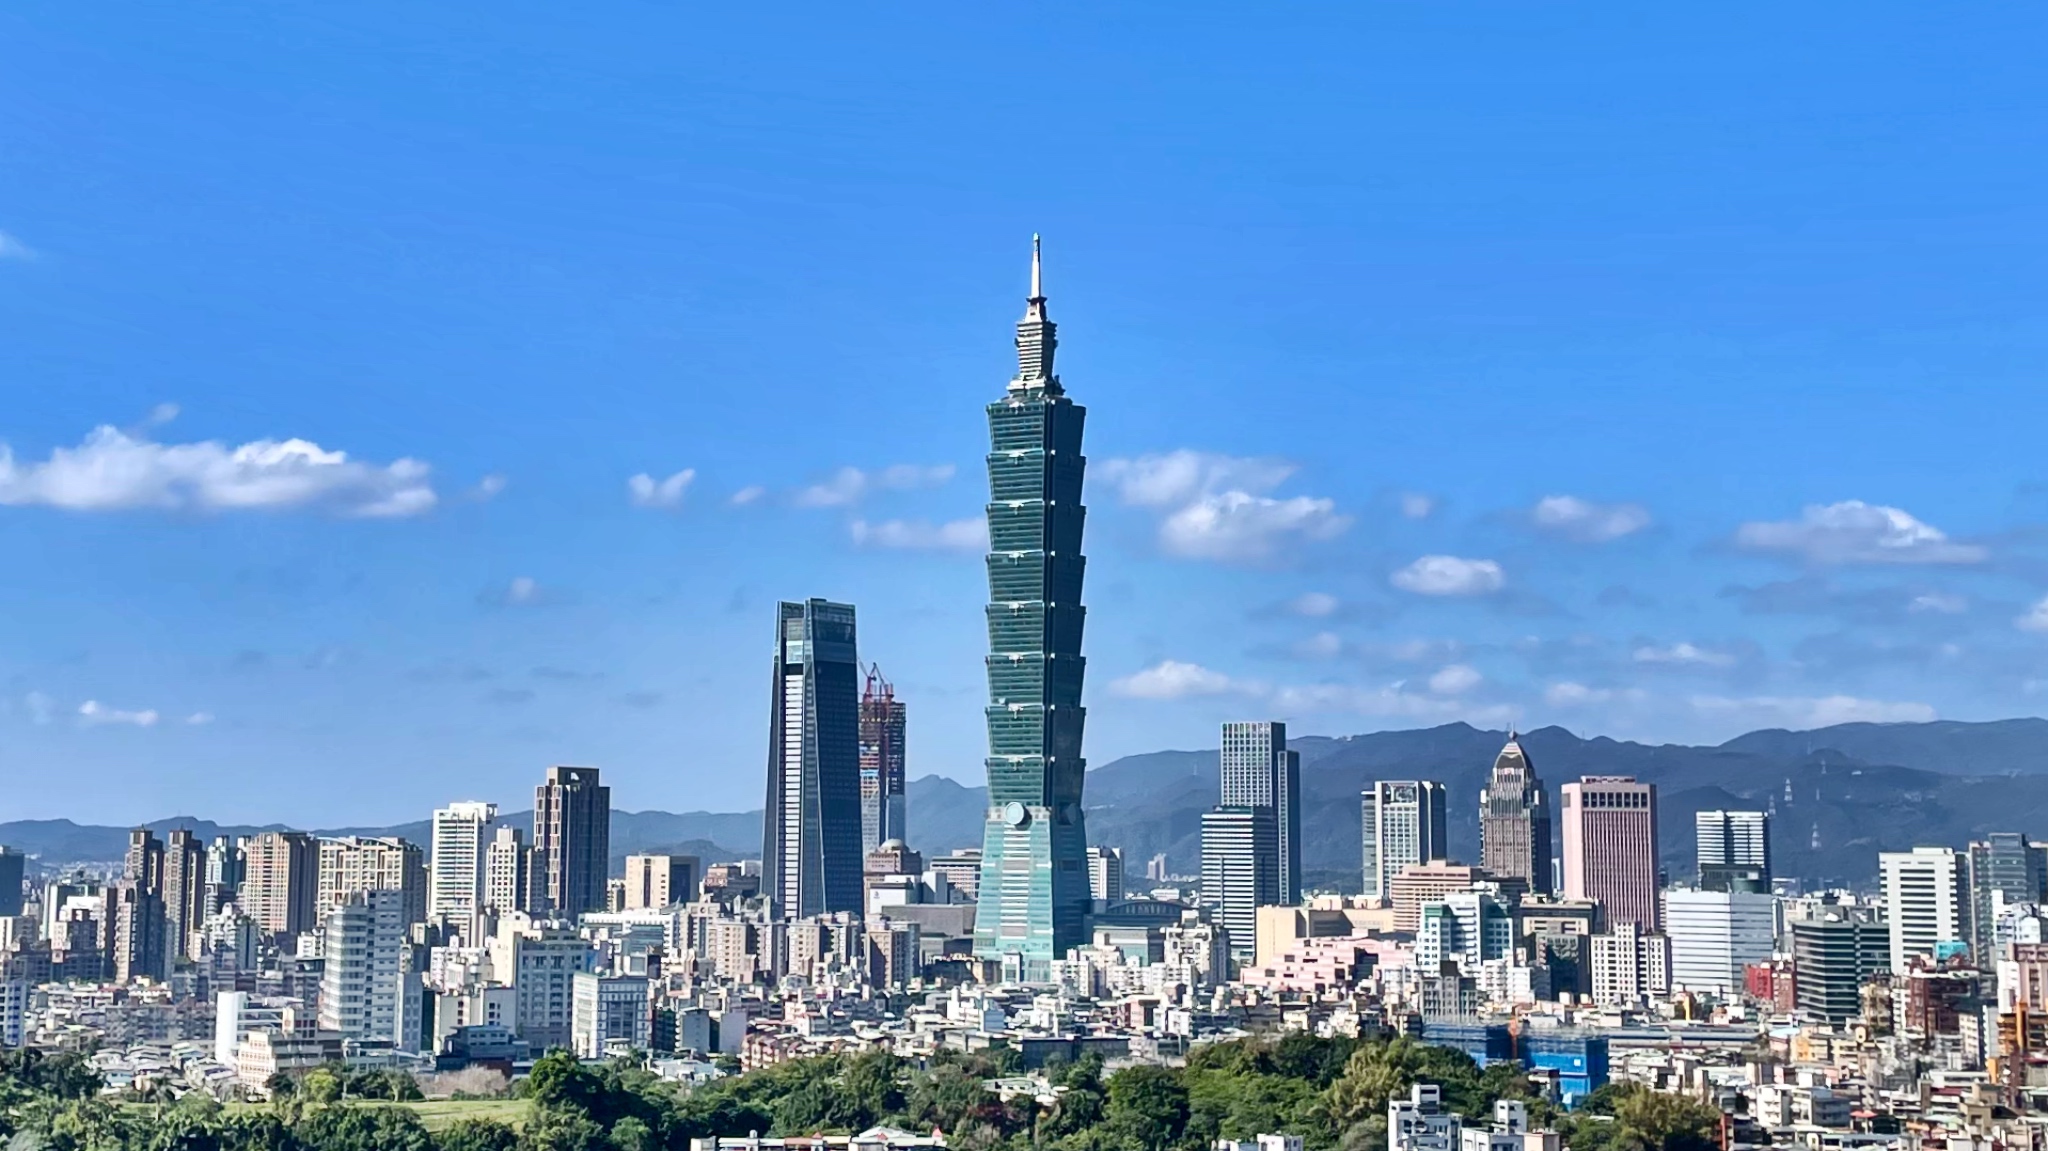 The amazing city of Taipei